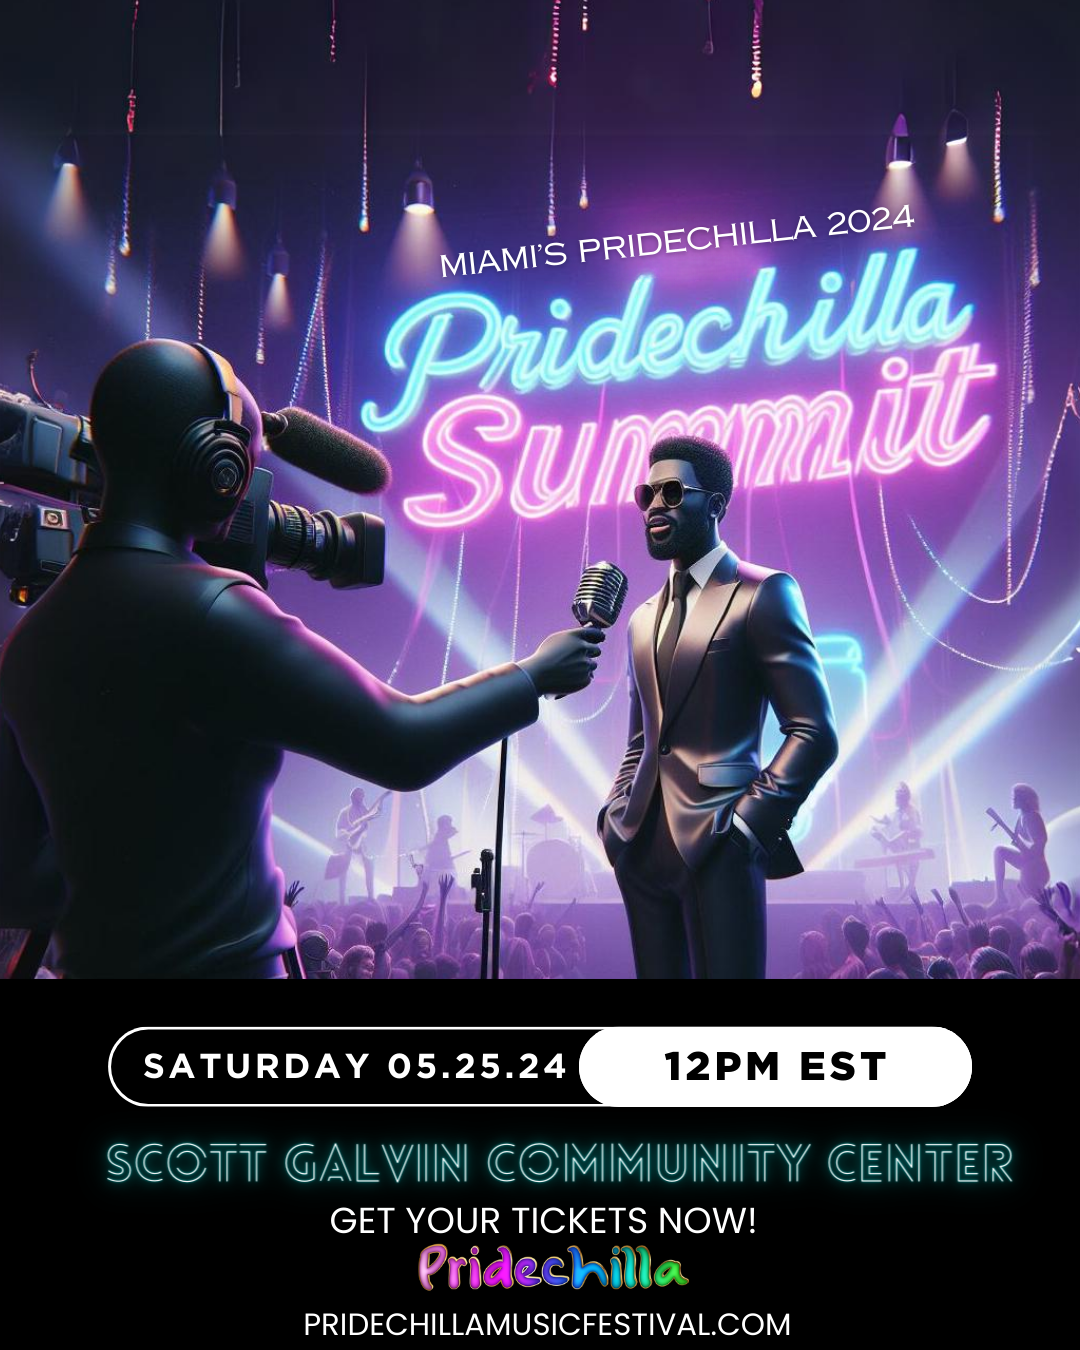 Pridechilla Summit  on may. 25, 12:00@Scott Galvin Community Center - Compra entradas y obtén información enAfro Pride Federation pridechillamusicfestival